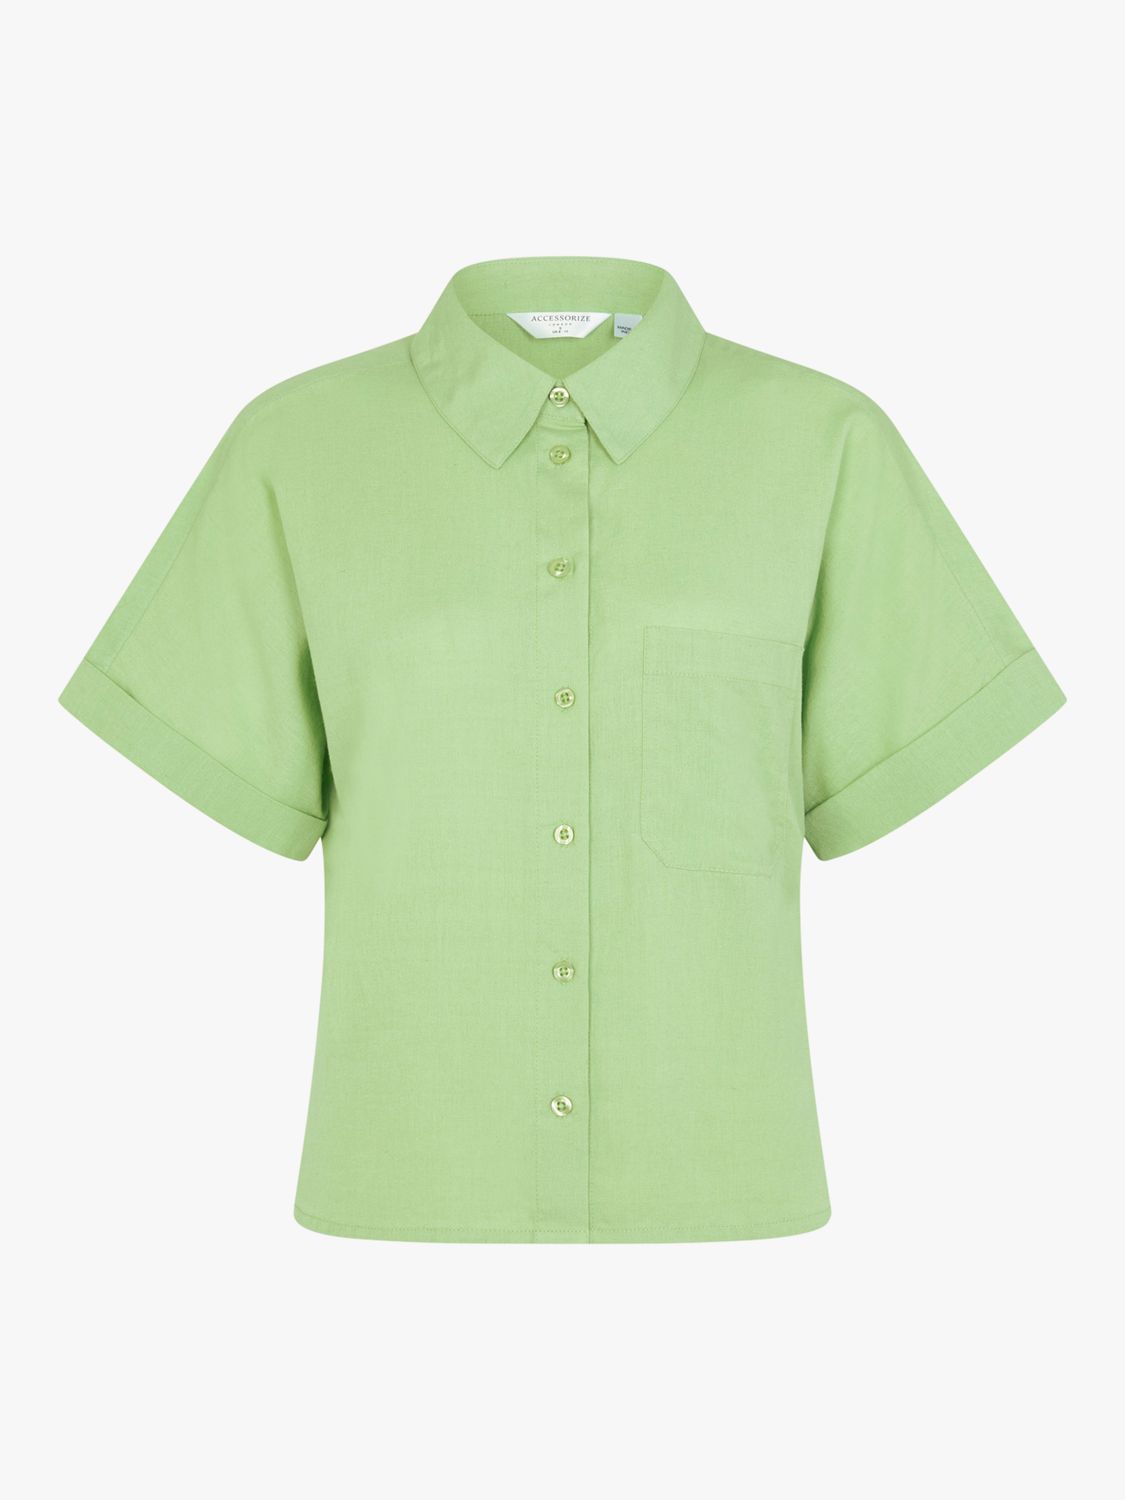 Accessorize Beach Short Sleeve Shirt, Green, XS